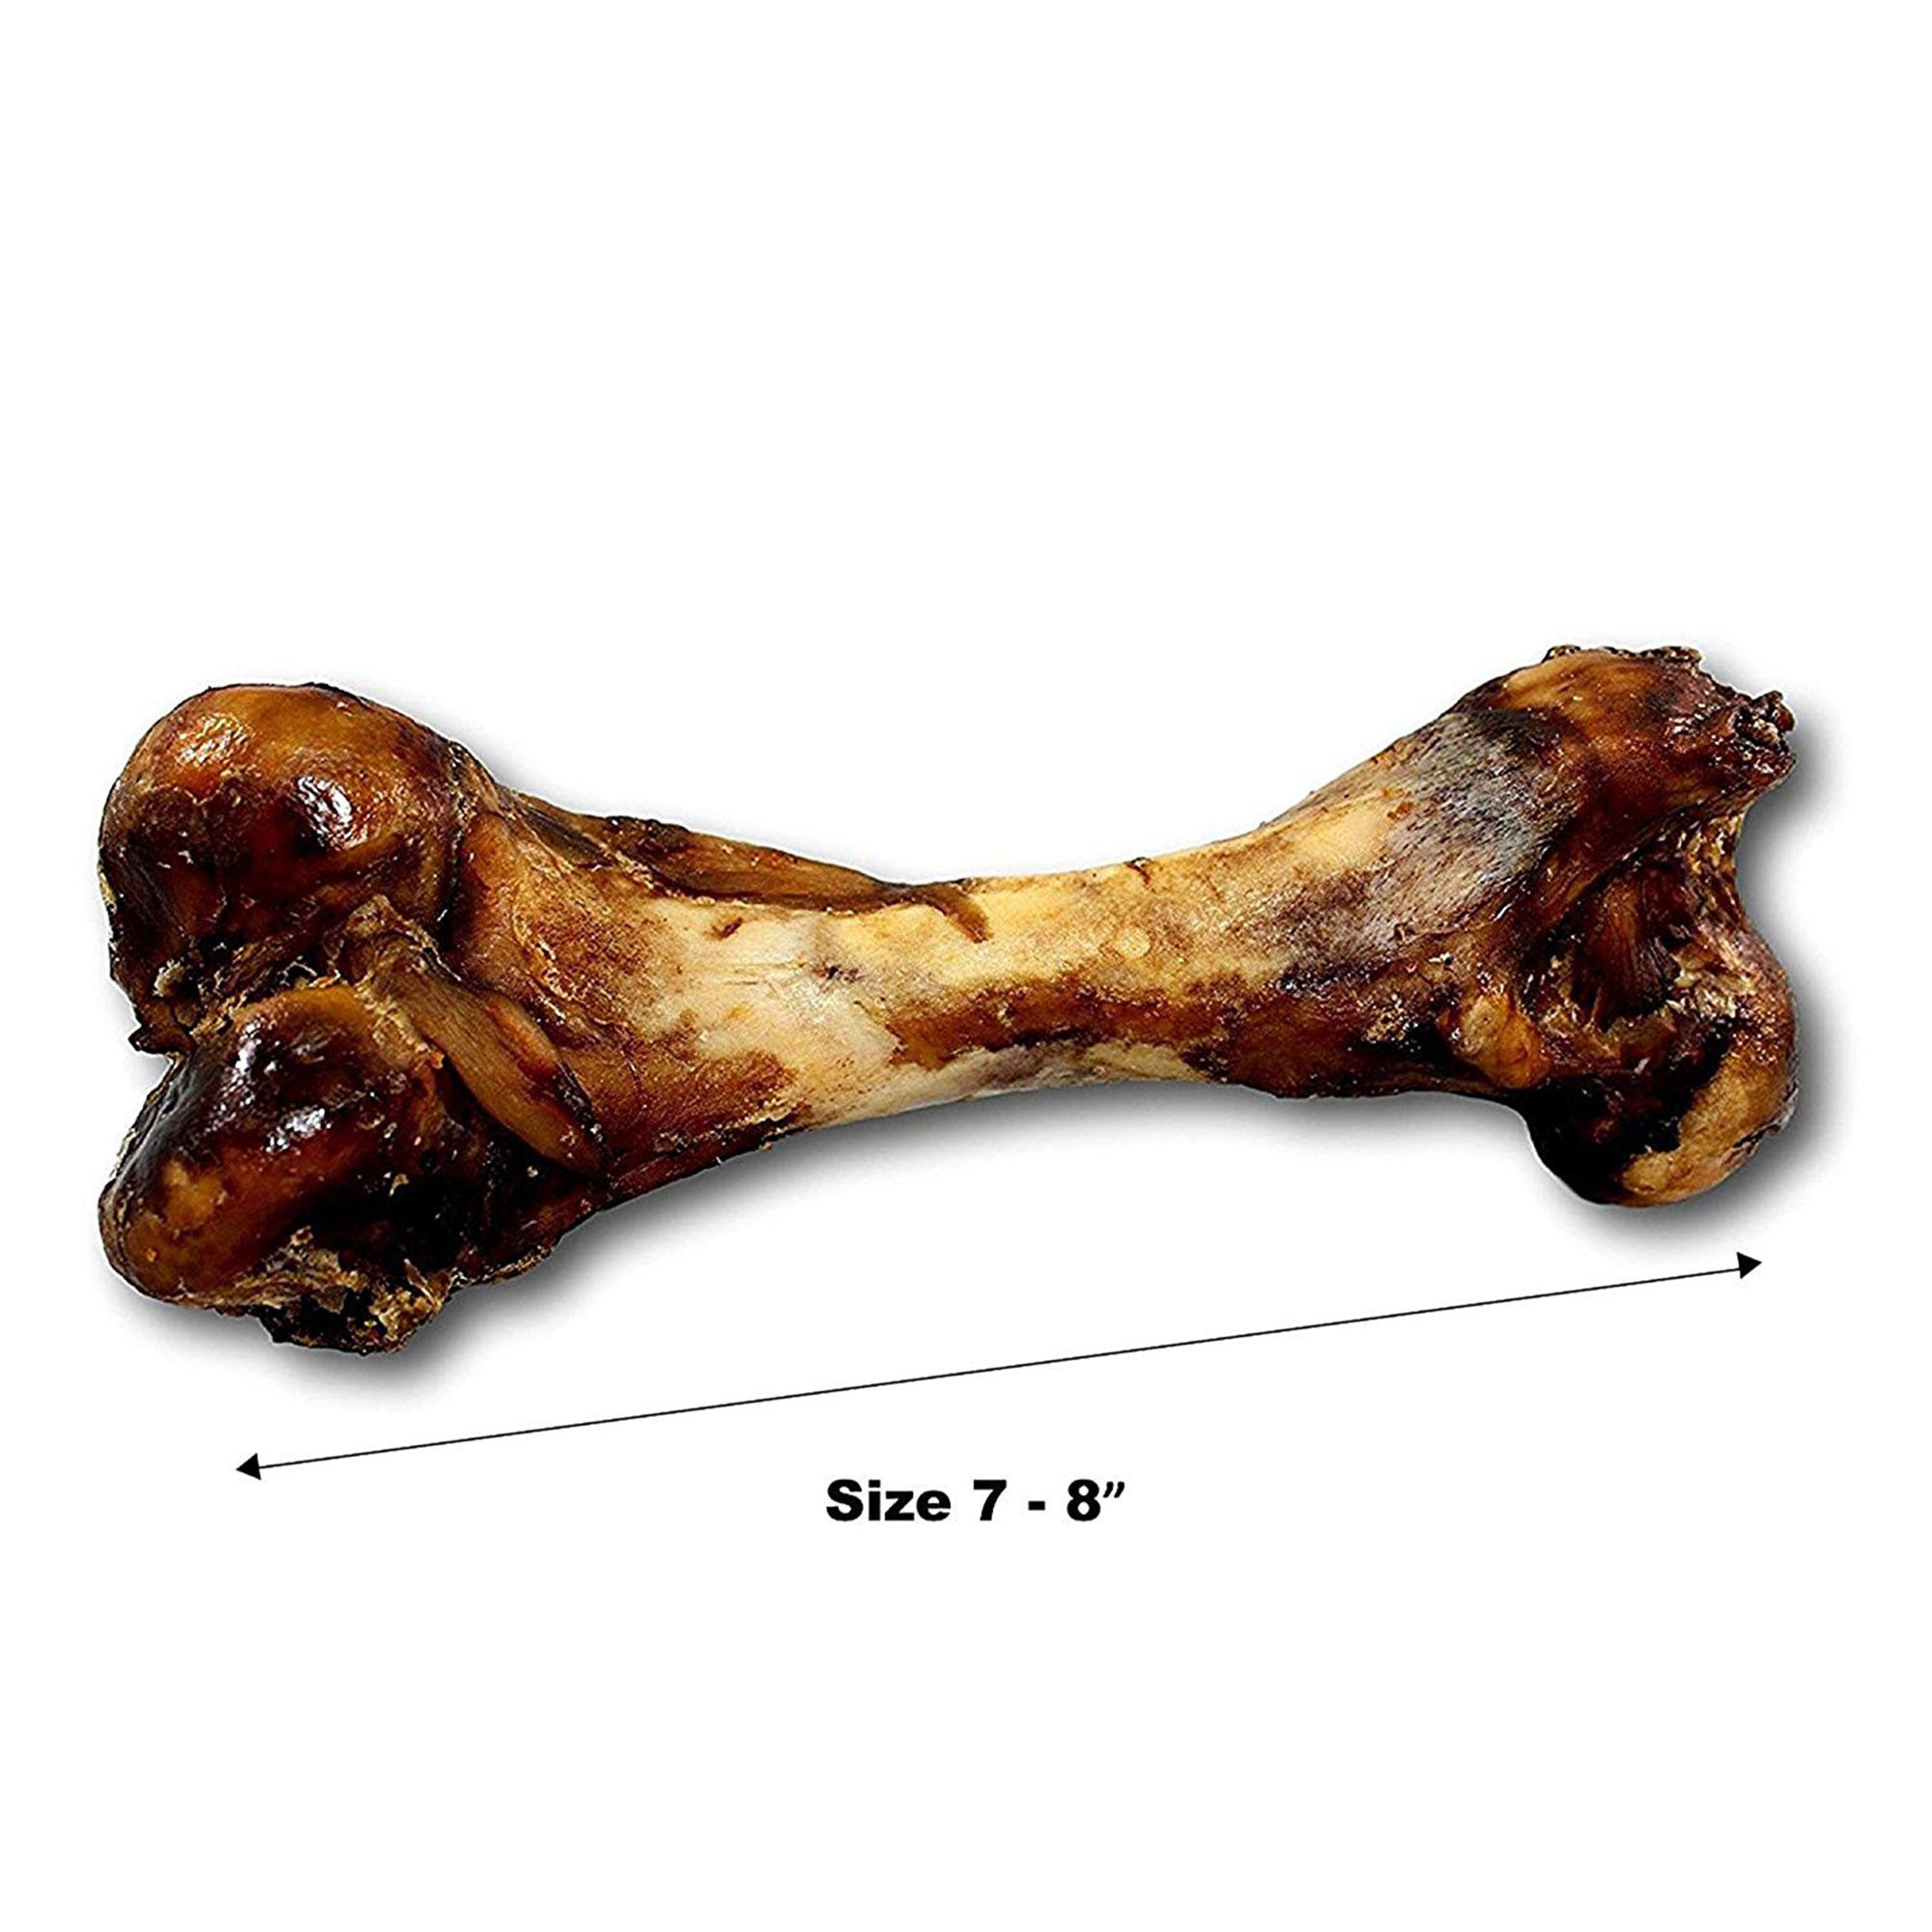 Pork Bones  -  Premium Meaty Full pork femur bones for Dogs (1 or 2 Count) by 123 Treats